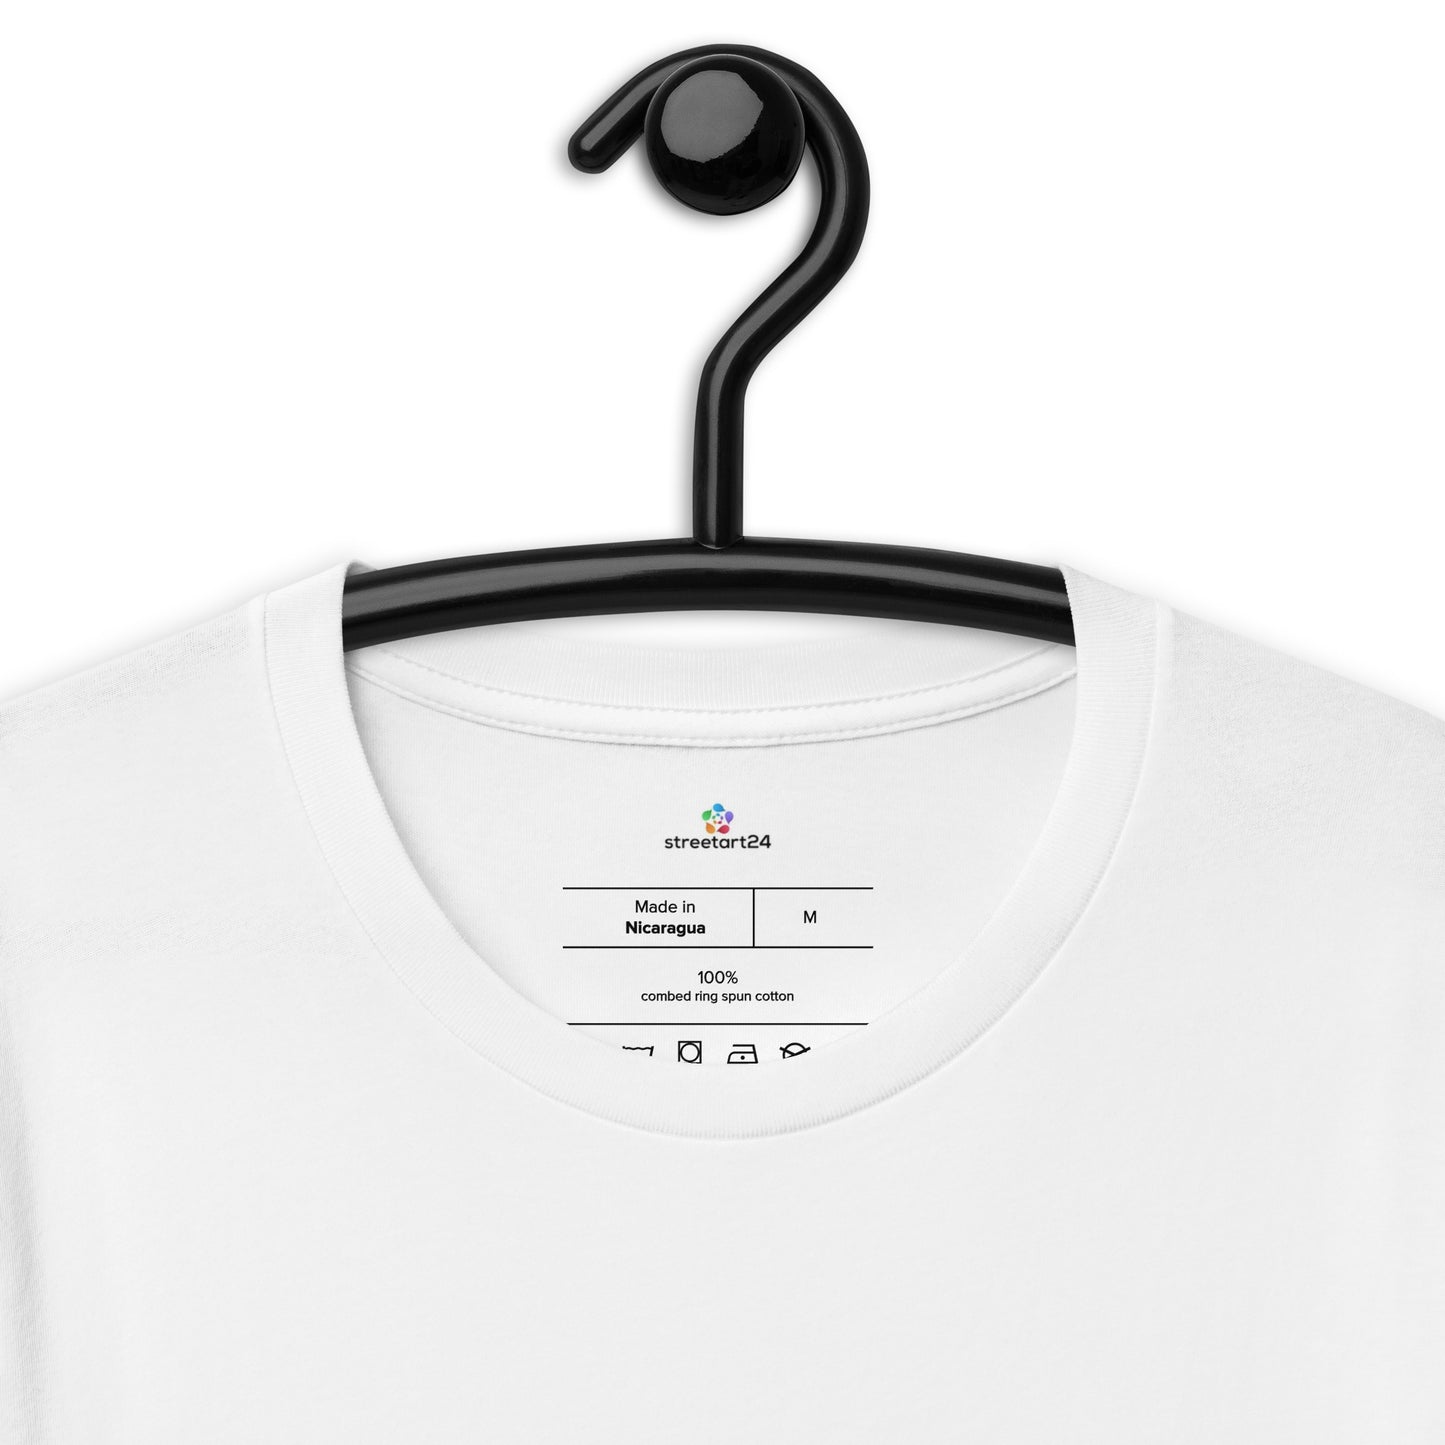 Camiseta de manga corta unisex Océano Abstracto